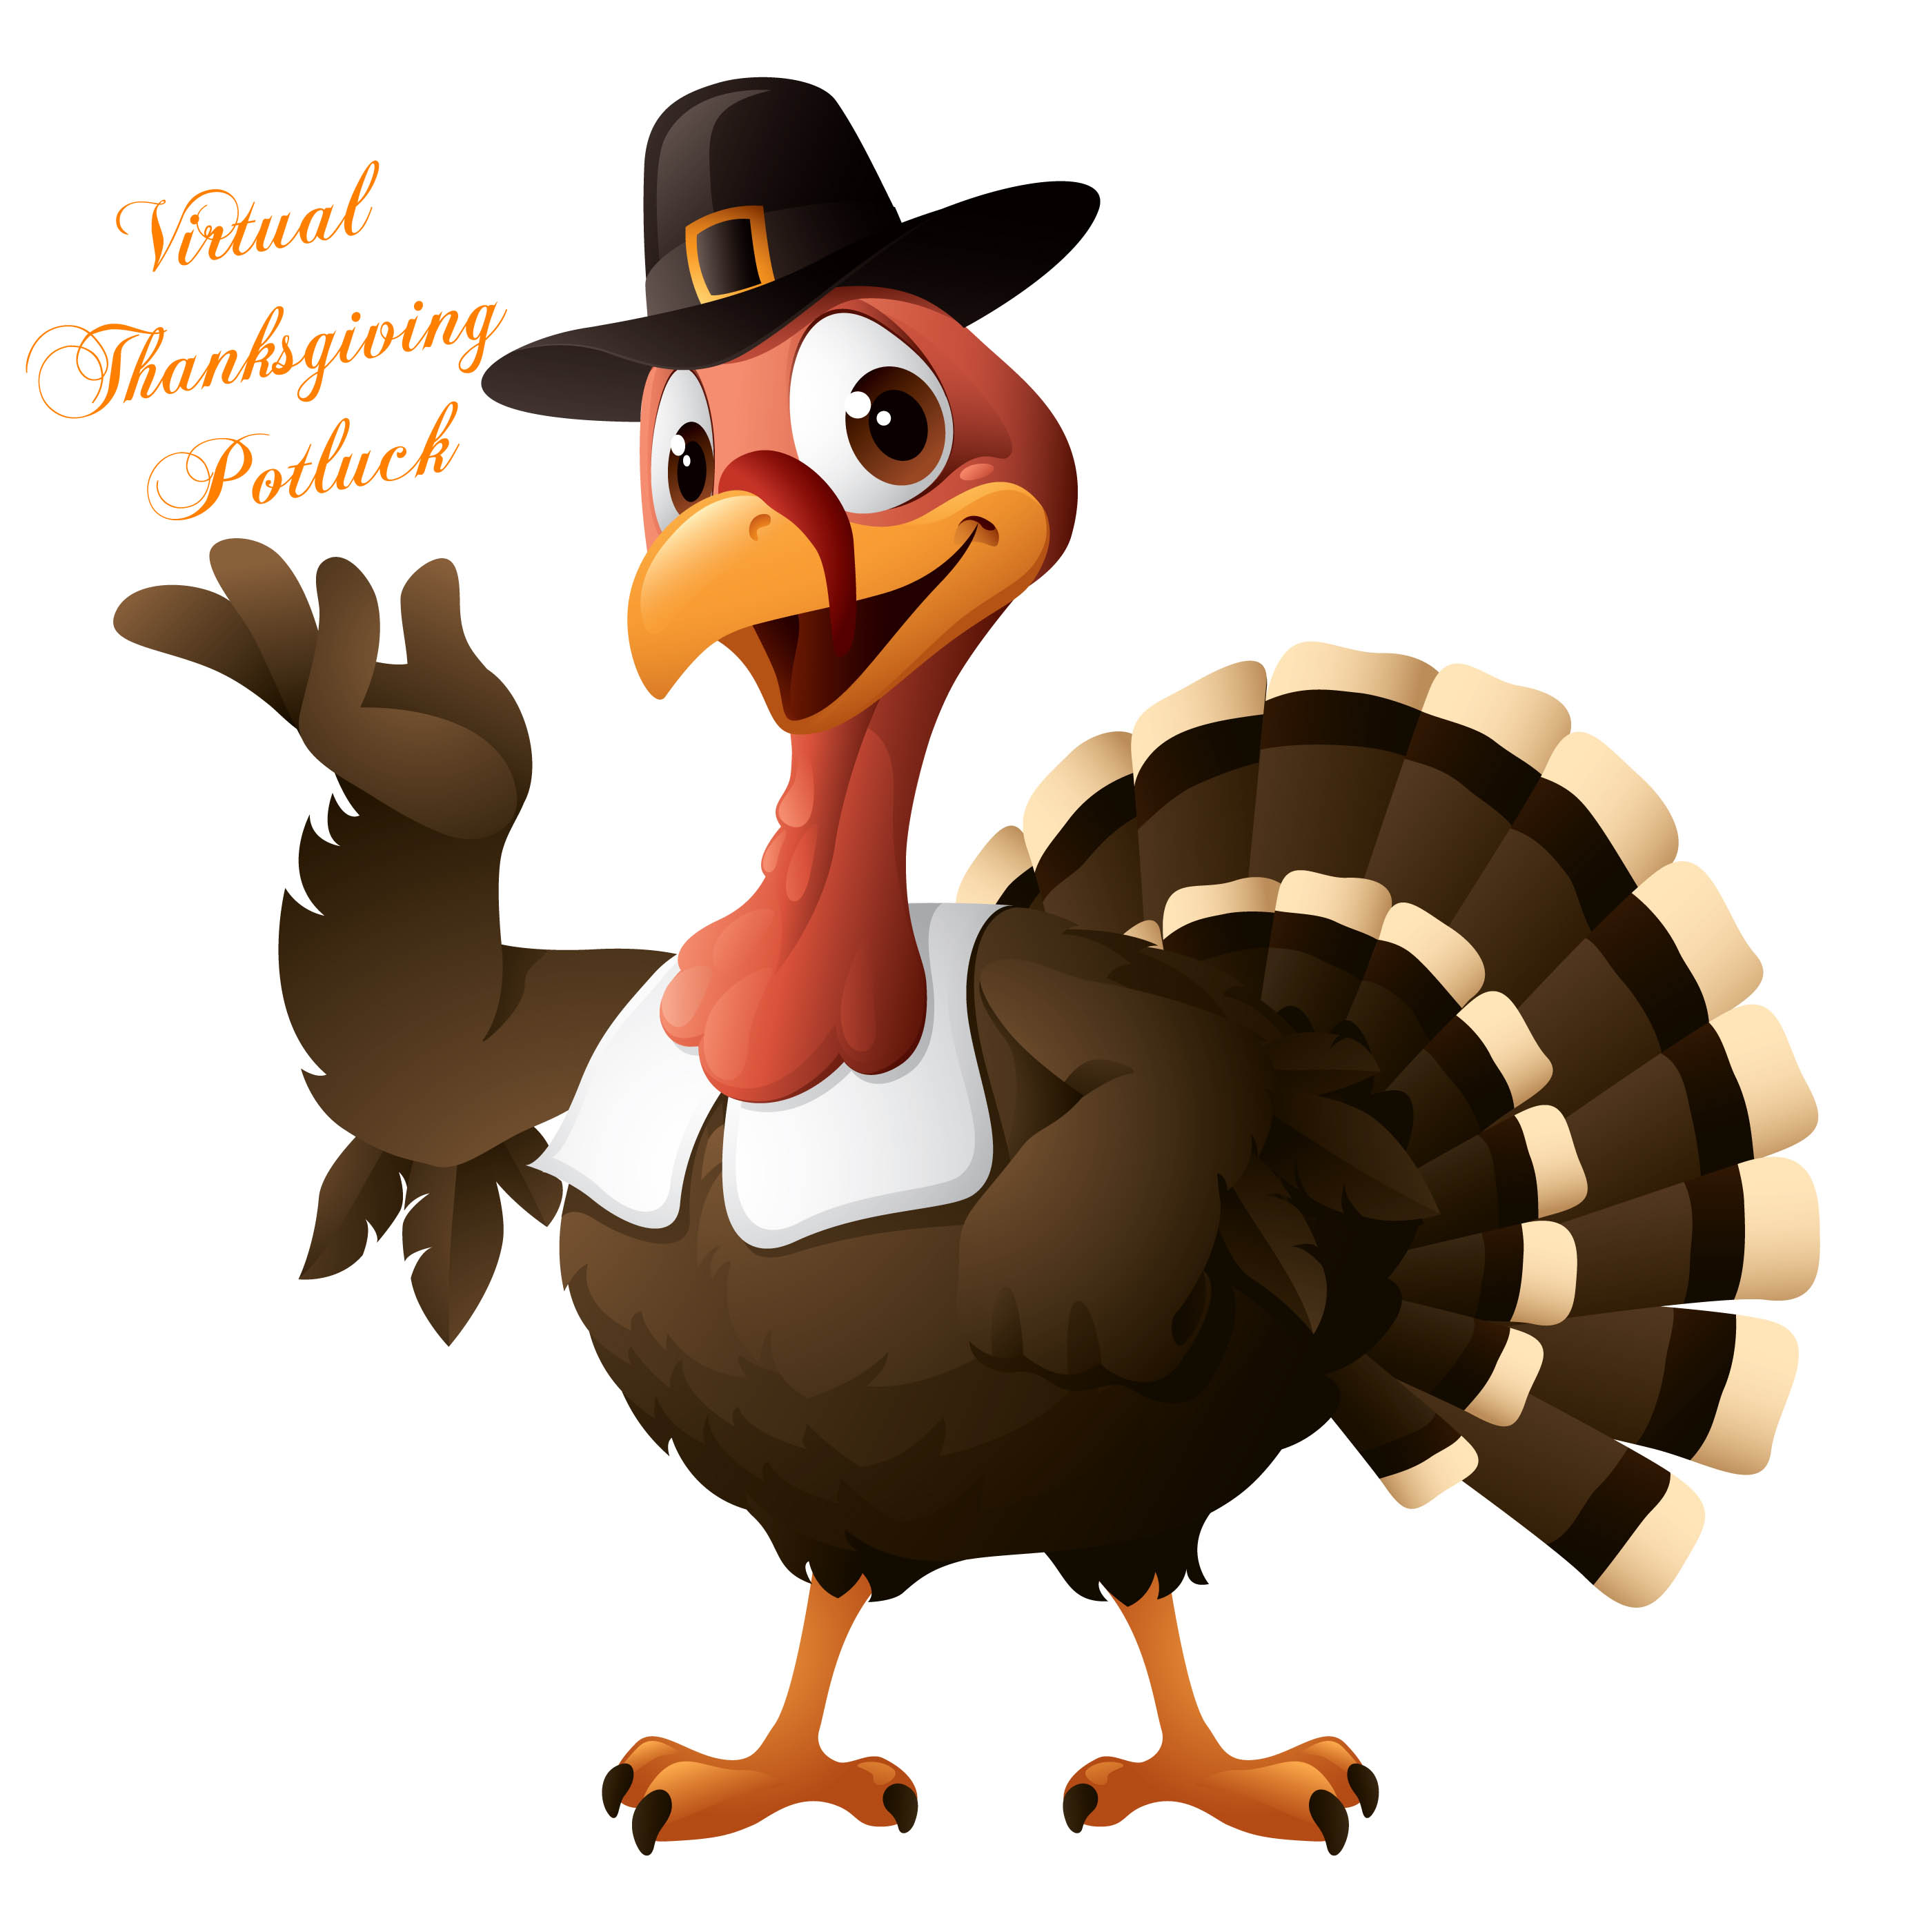 Thanksgiving Potluck Clip Art